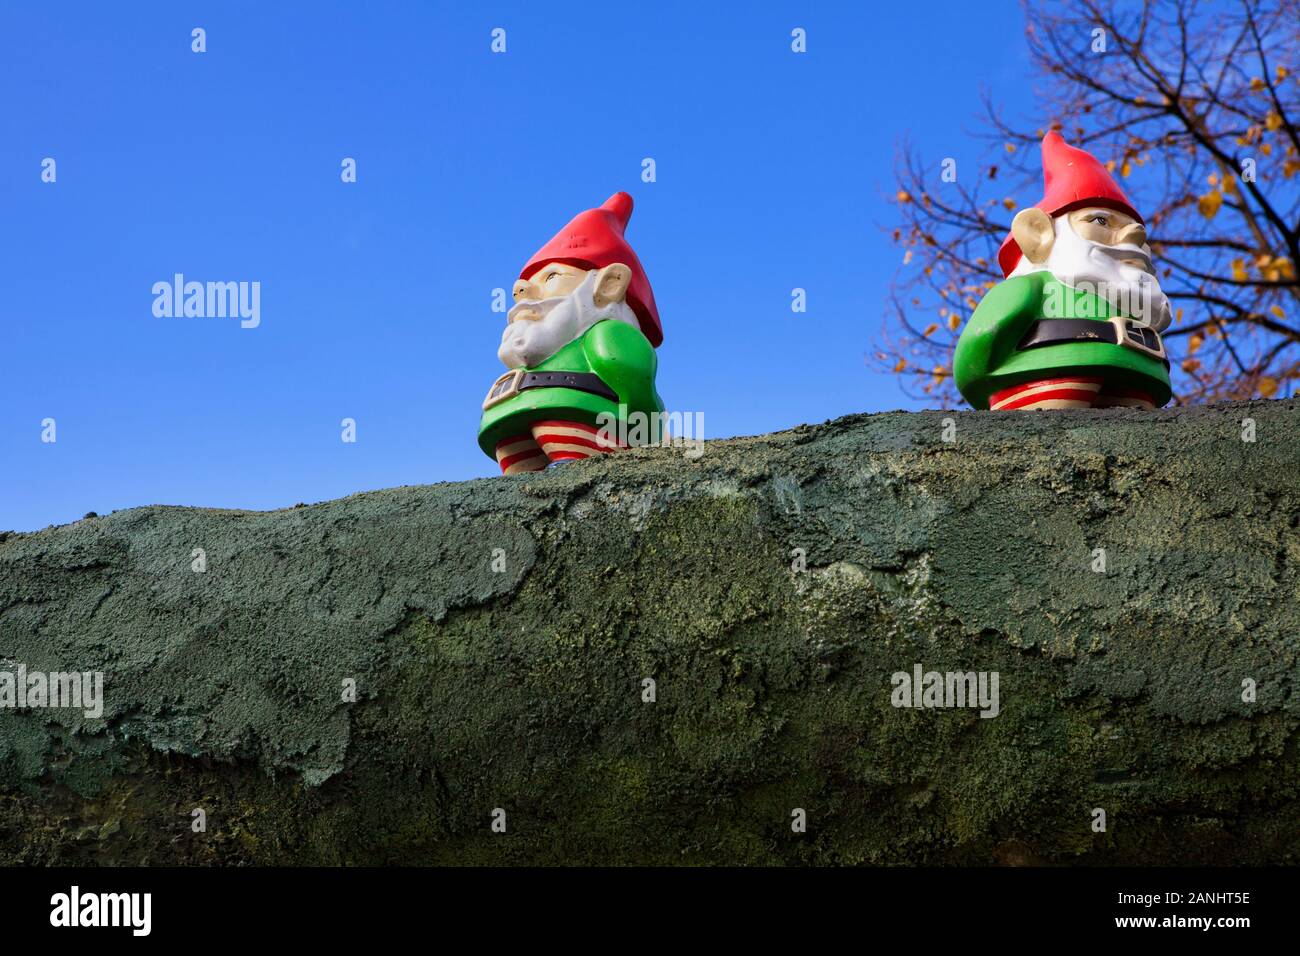 Dettaglio a una pressione di stallo di Natale, il mercatino di Natale, Germania, Europa Foto Stock